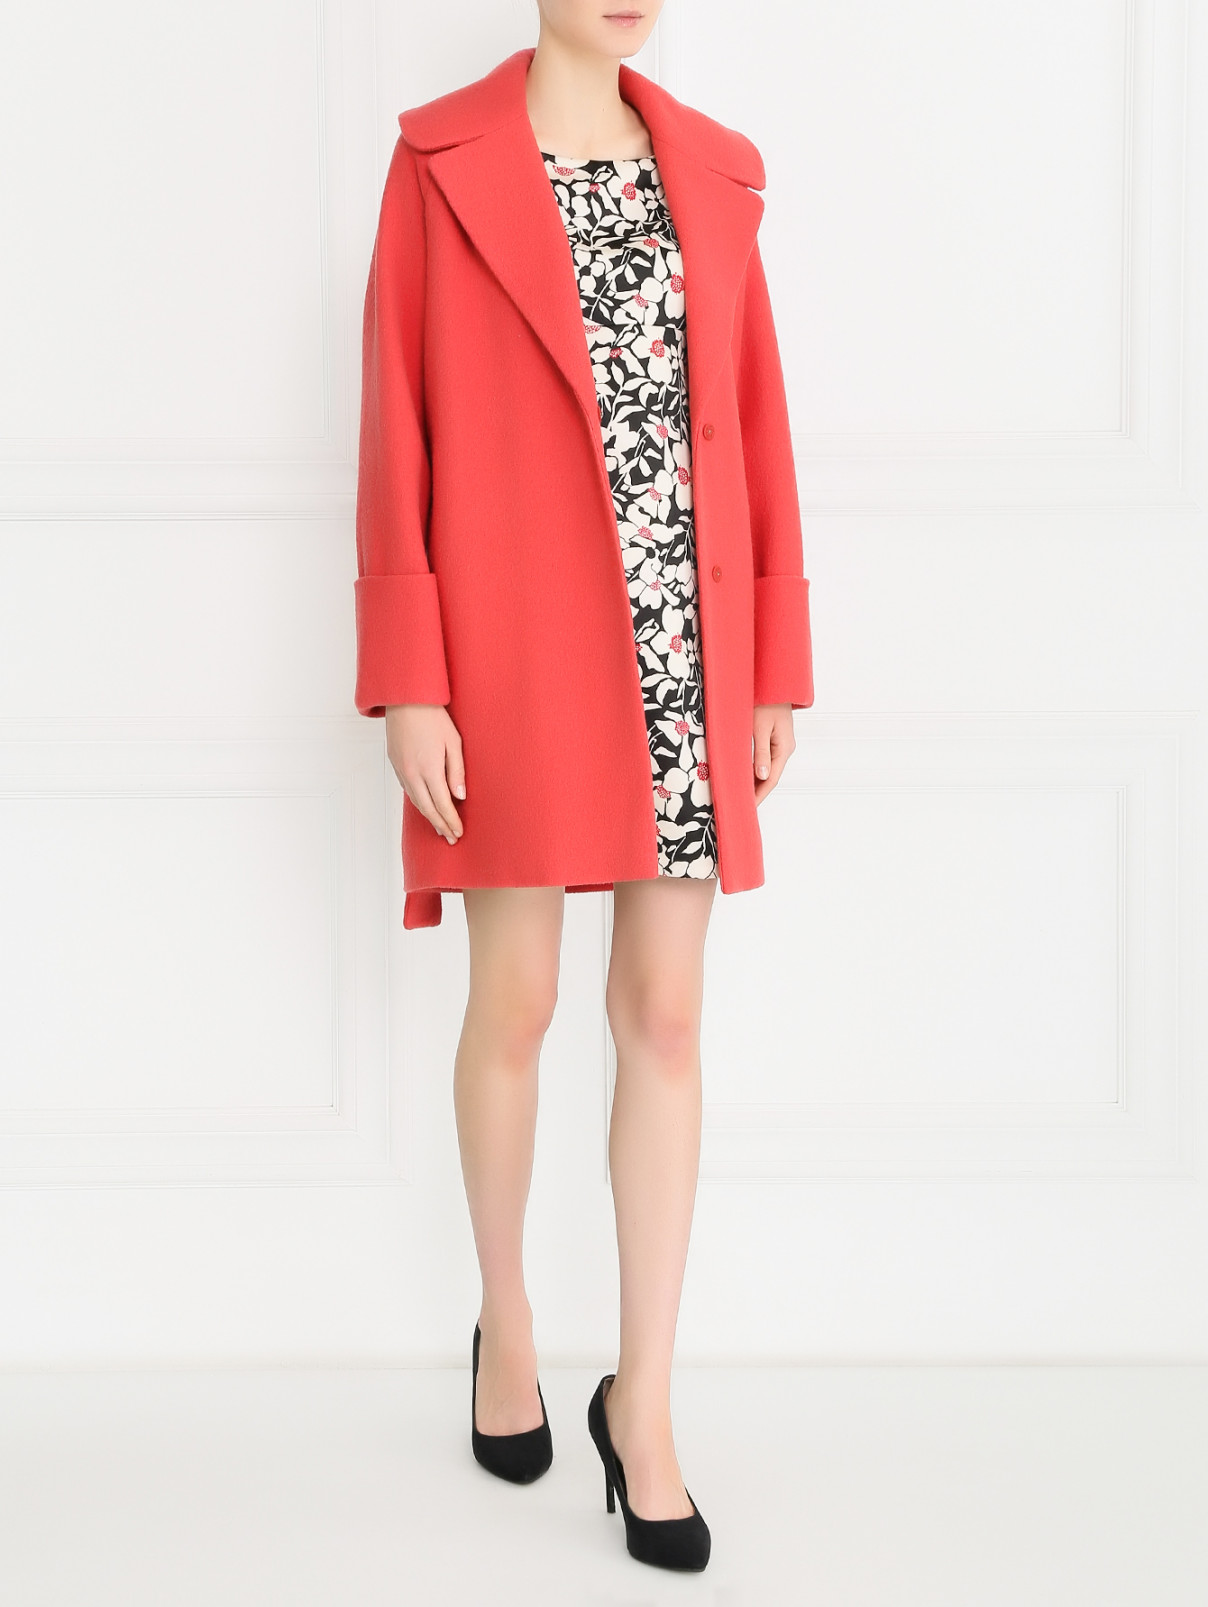 Пальто из шерсти с поясом DESIGNERS REMIX  –  Модель Общий вид  – Цвет:  Красный